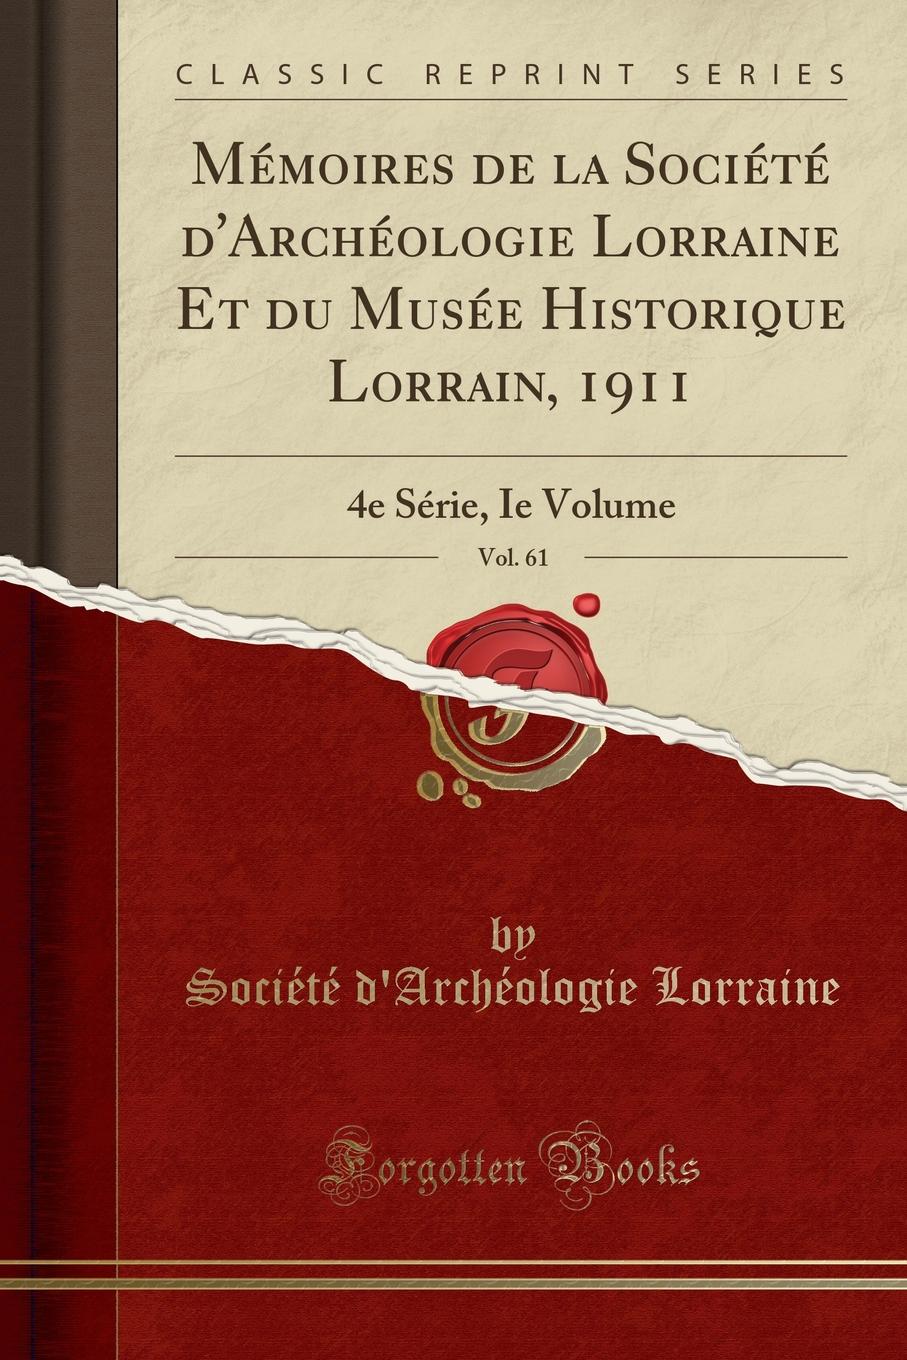 Société d'Archéologie Lorraine Memoires de la Societe d.Archeologie Lorraine Et du Musee Historique Lorrain, 1911, Vol. 61. 4e Serie, Ie Volume (Classic Reprint)